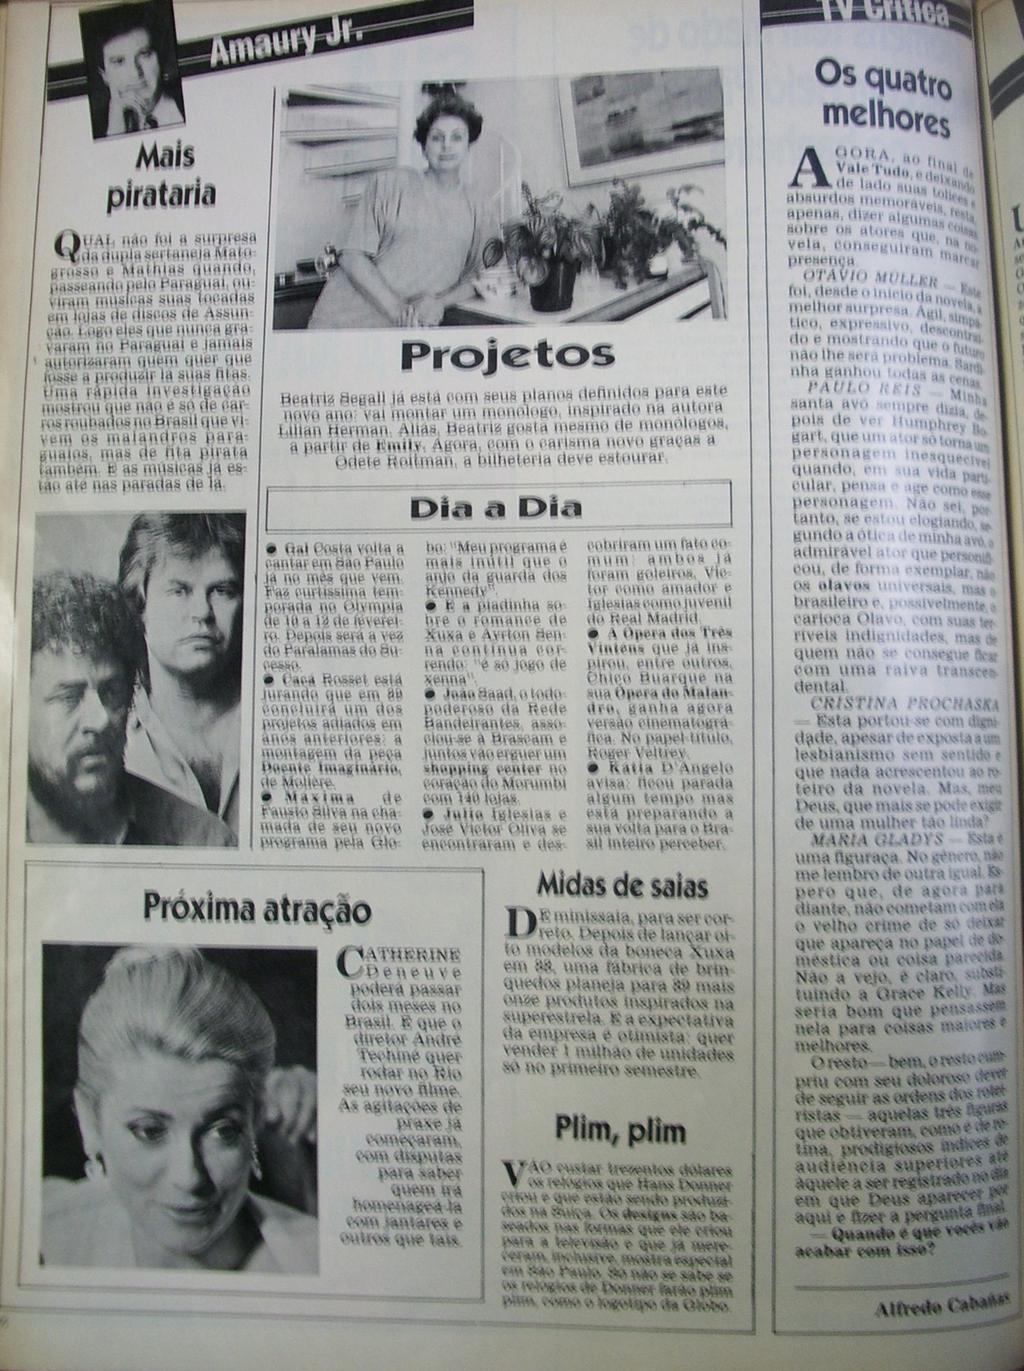 141 COLUNA Amiga, nº 976, página